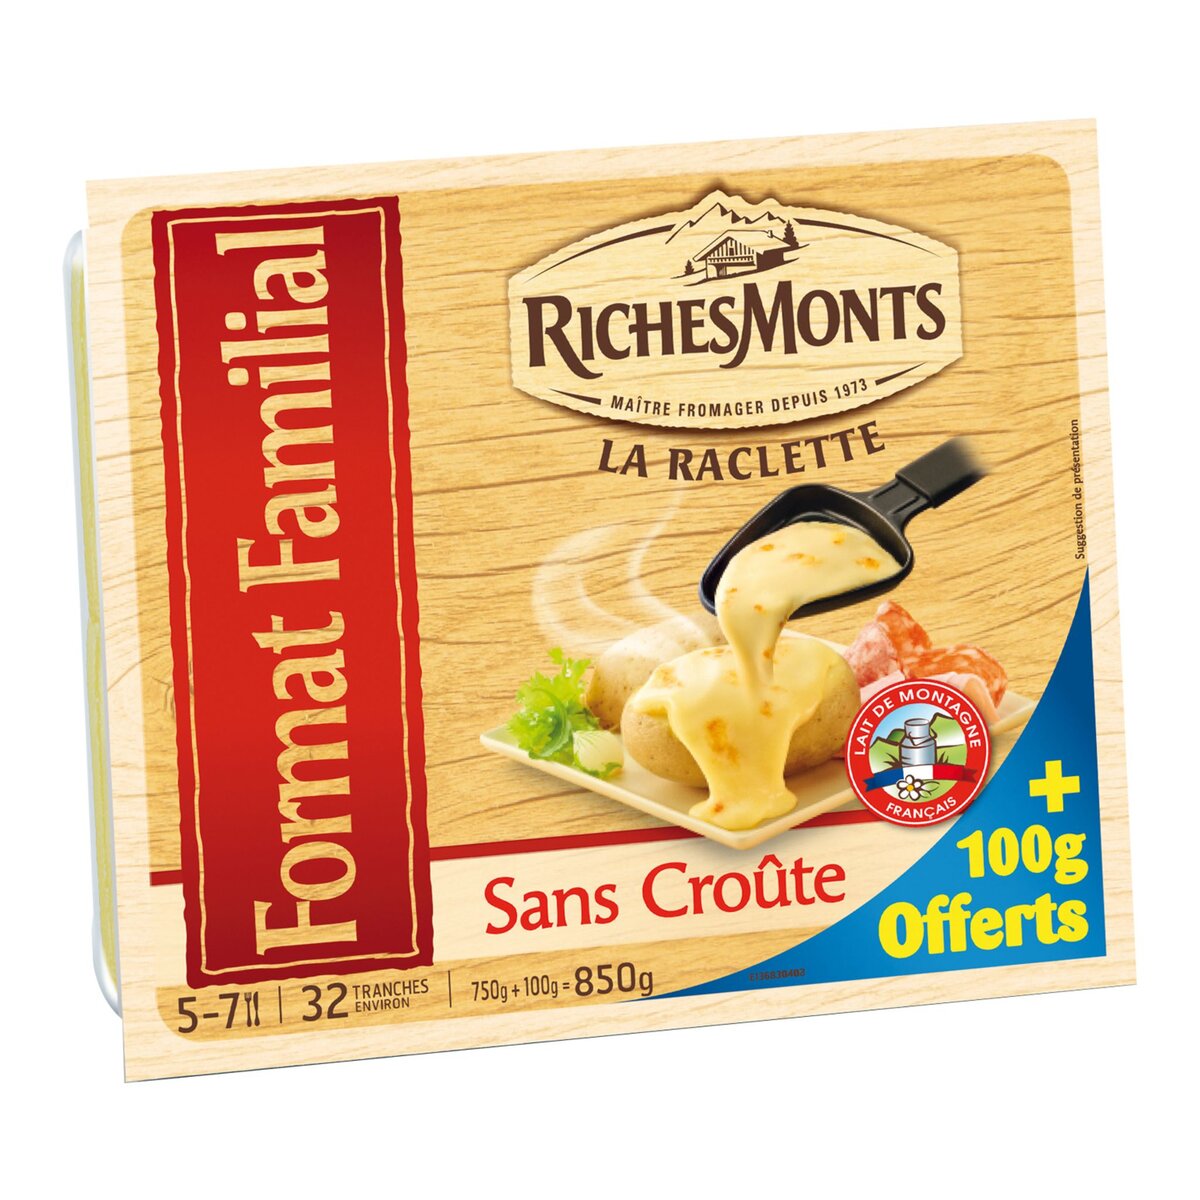 RICHESMONTS Richesmonts plateau raclette sans croute 750g +100goffert